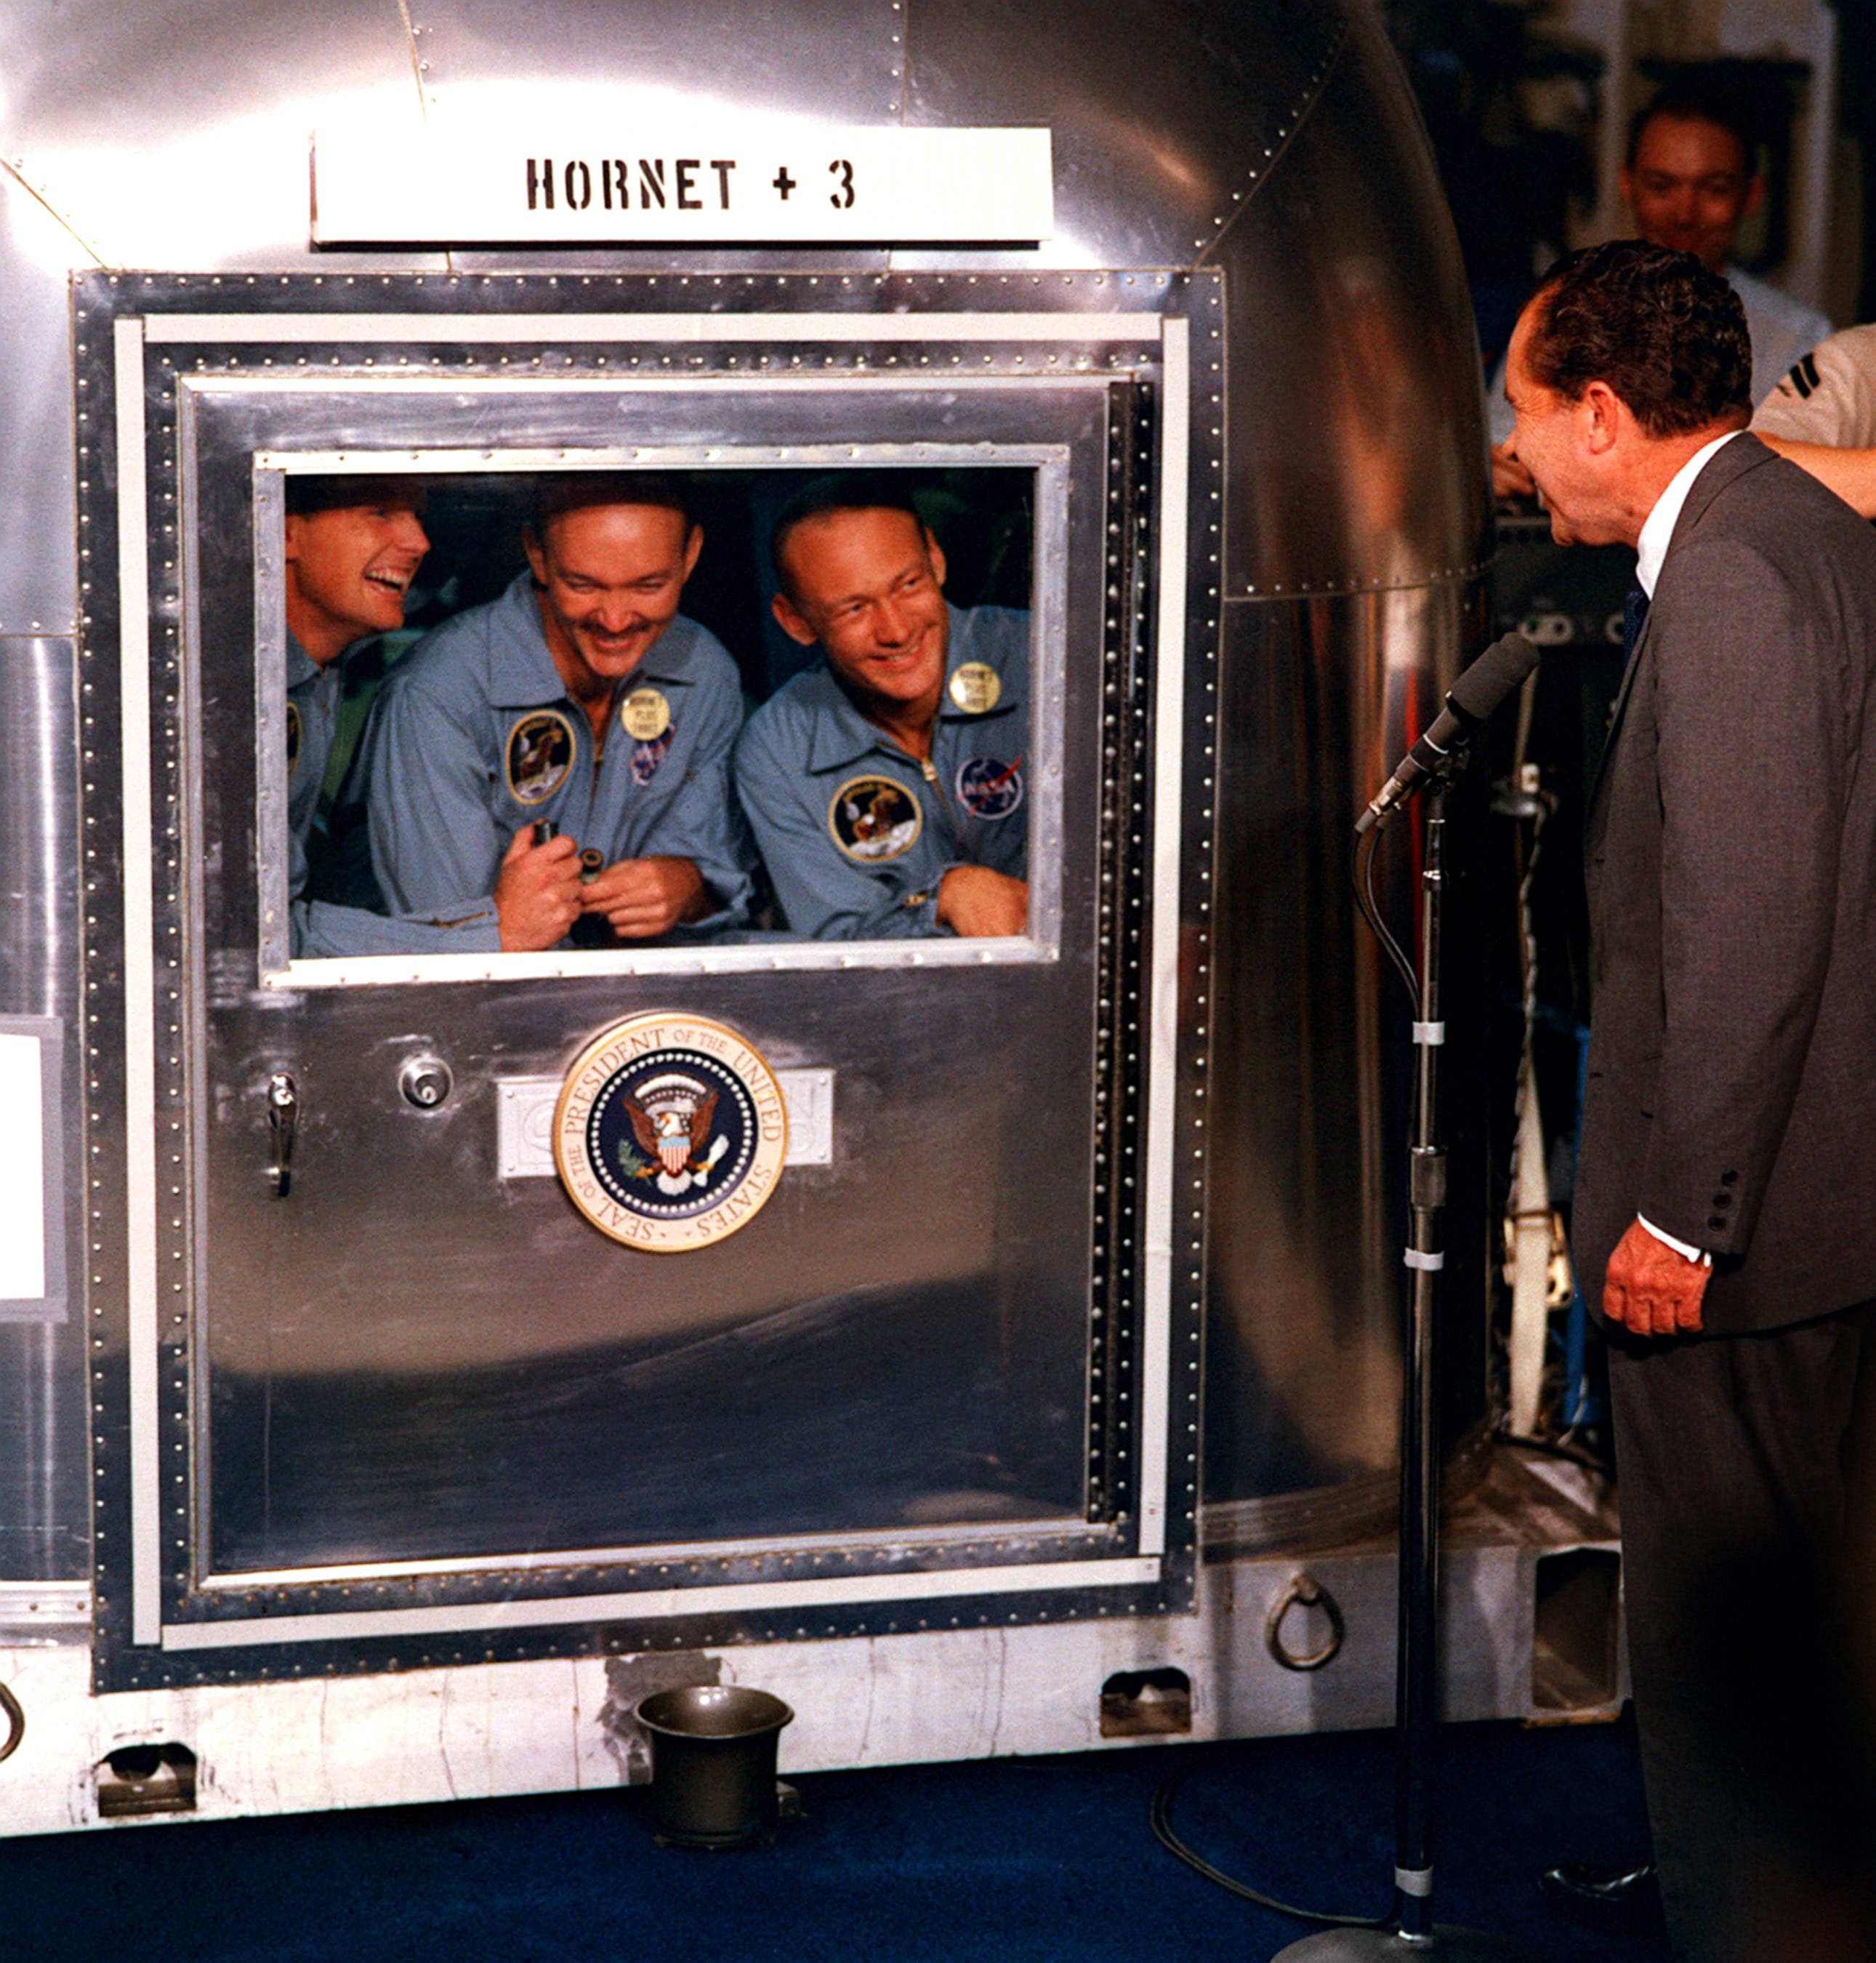 Il Presidente Nixon saluta i tre astronauti in isolamento cautelativo dopo il ritorno dal viaggio lunare